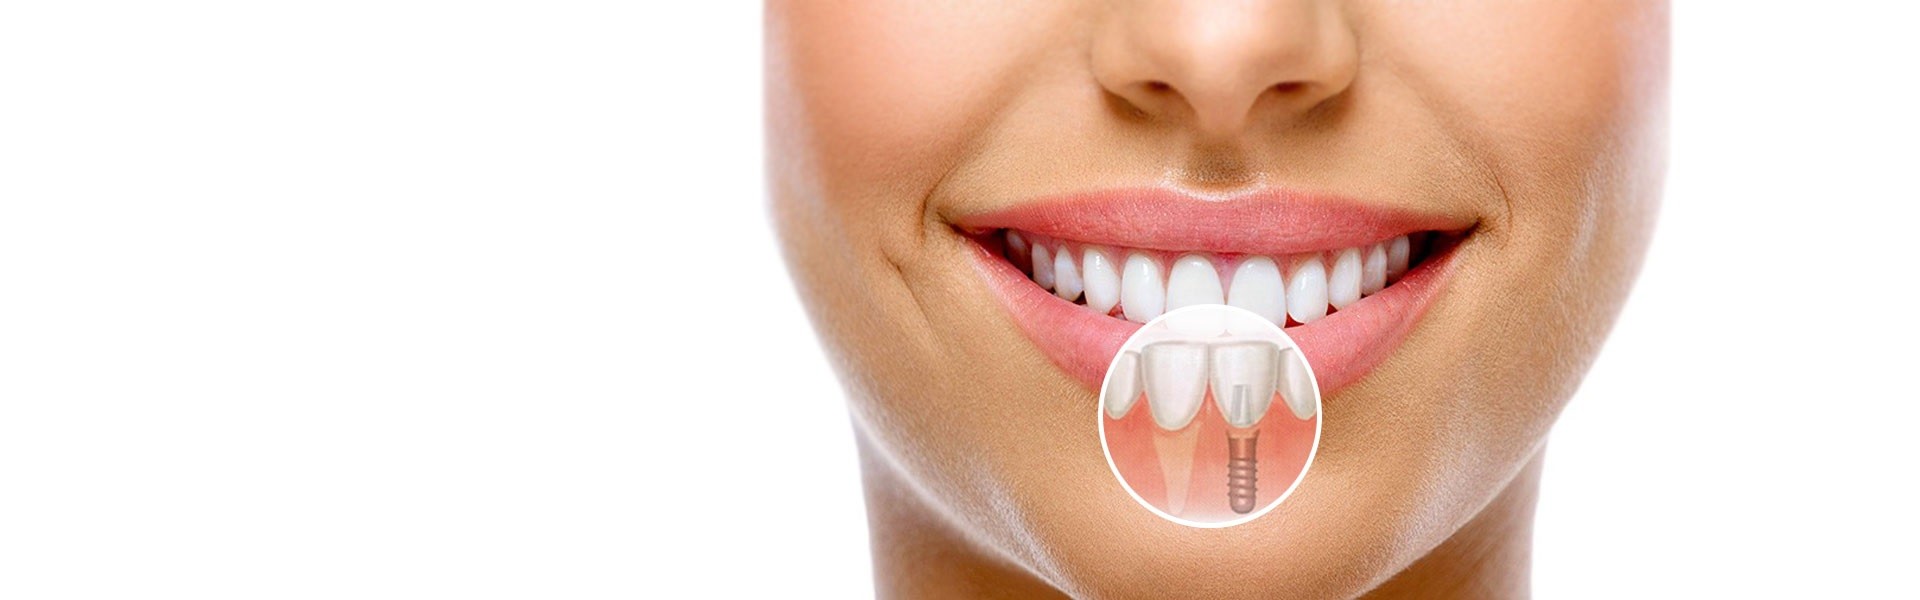 Высокопрофессиональная имплантация зубов под ключ в современной стоматологической клинике.